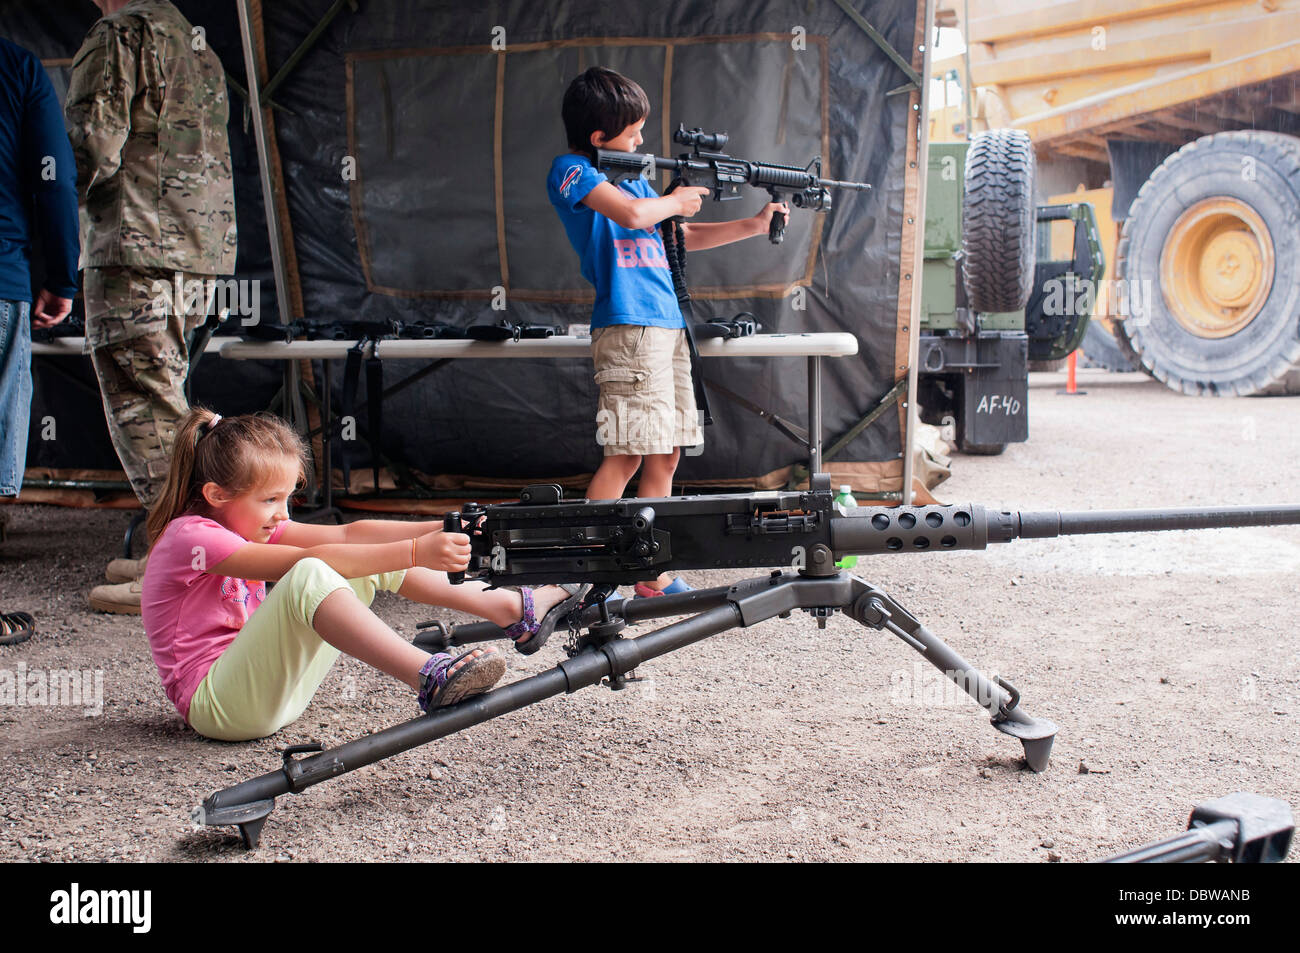 Una giovane ragazza si siede dietro una macchina pesante pistola come un ragazzo gioca con un fucile automatico durante una visualizzazione statica al Festival nautico Agosto 2, 2013 in città Rogers, Michigan. Foto Stock